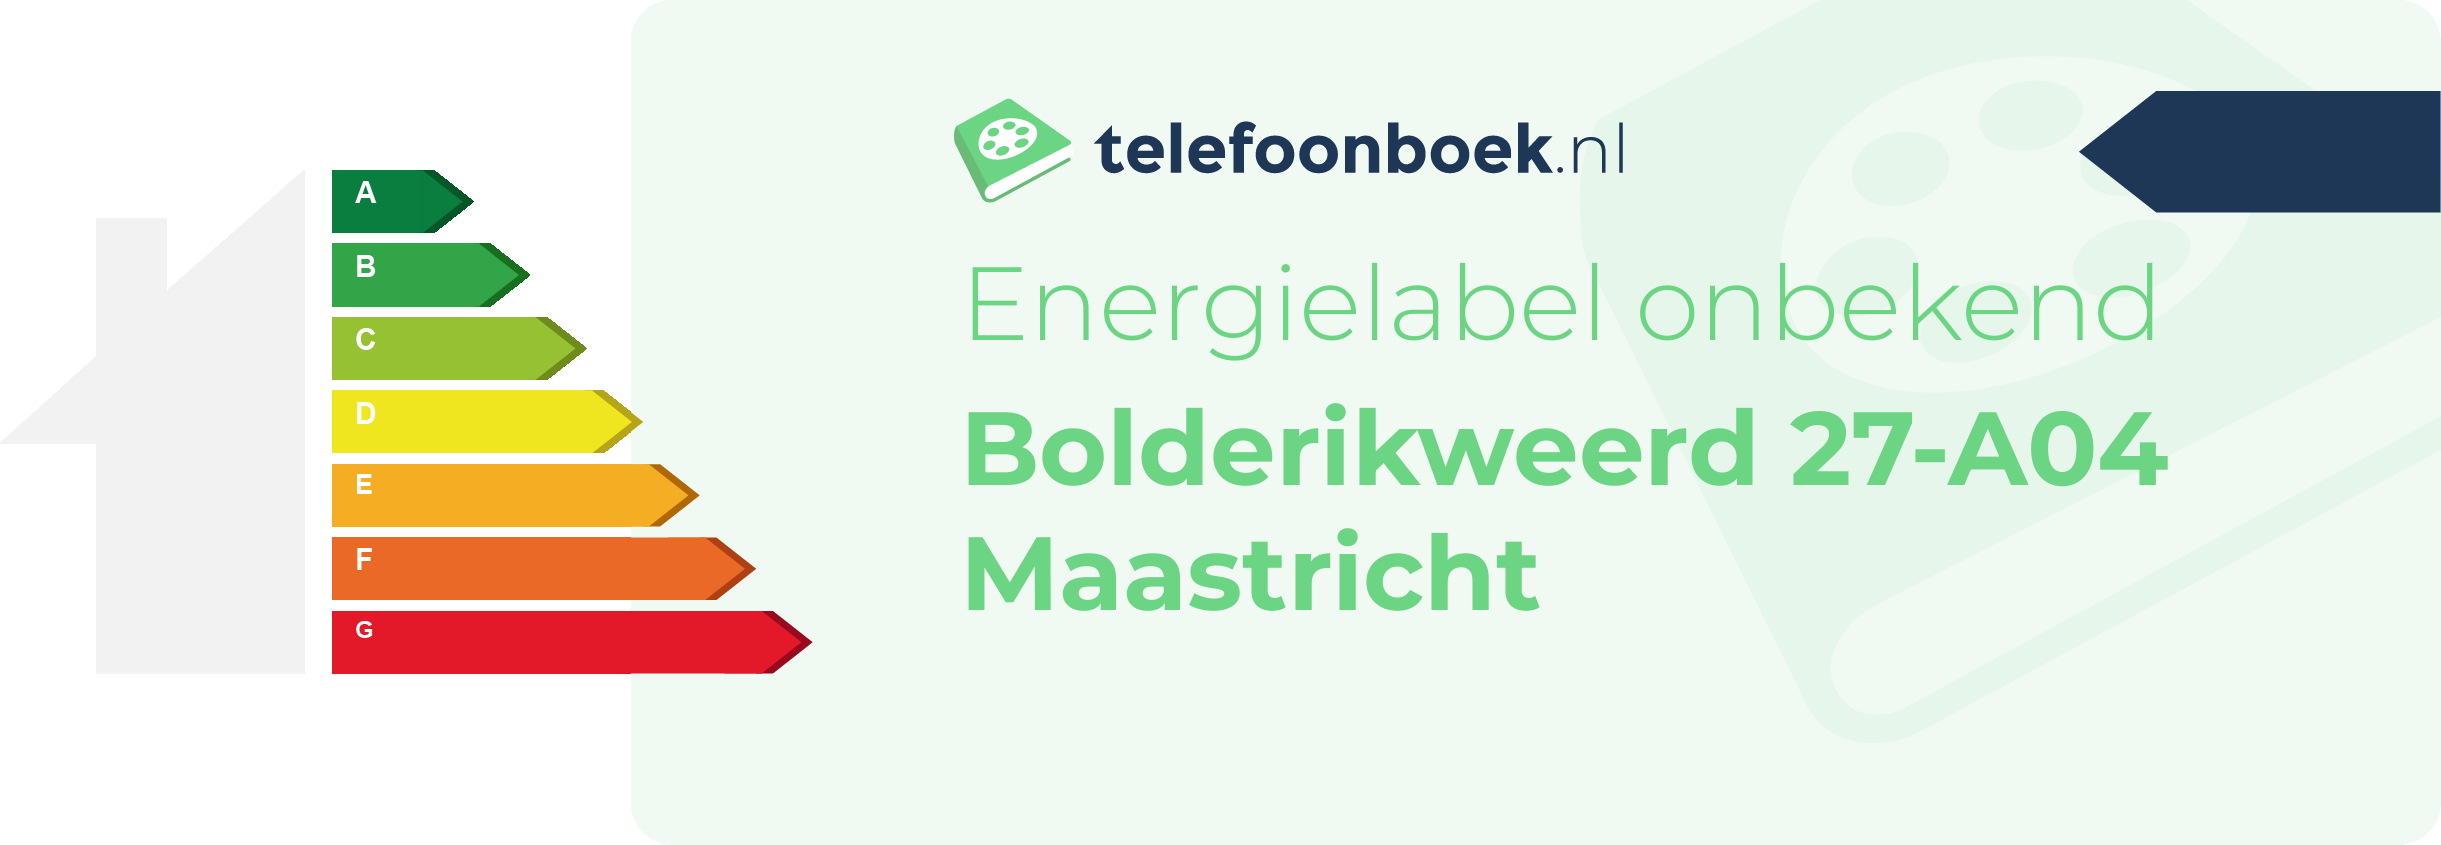 Energielabel Bolderikweerd 27-A04 Maastricht